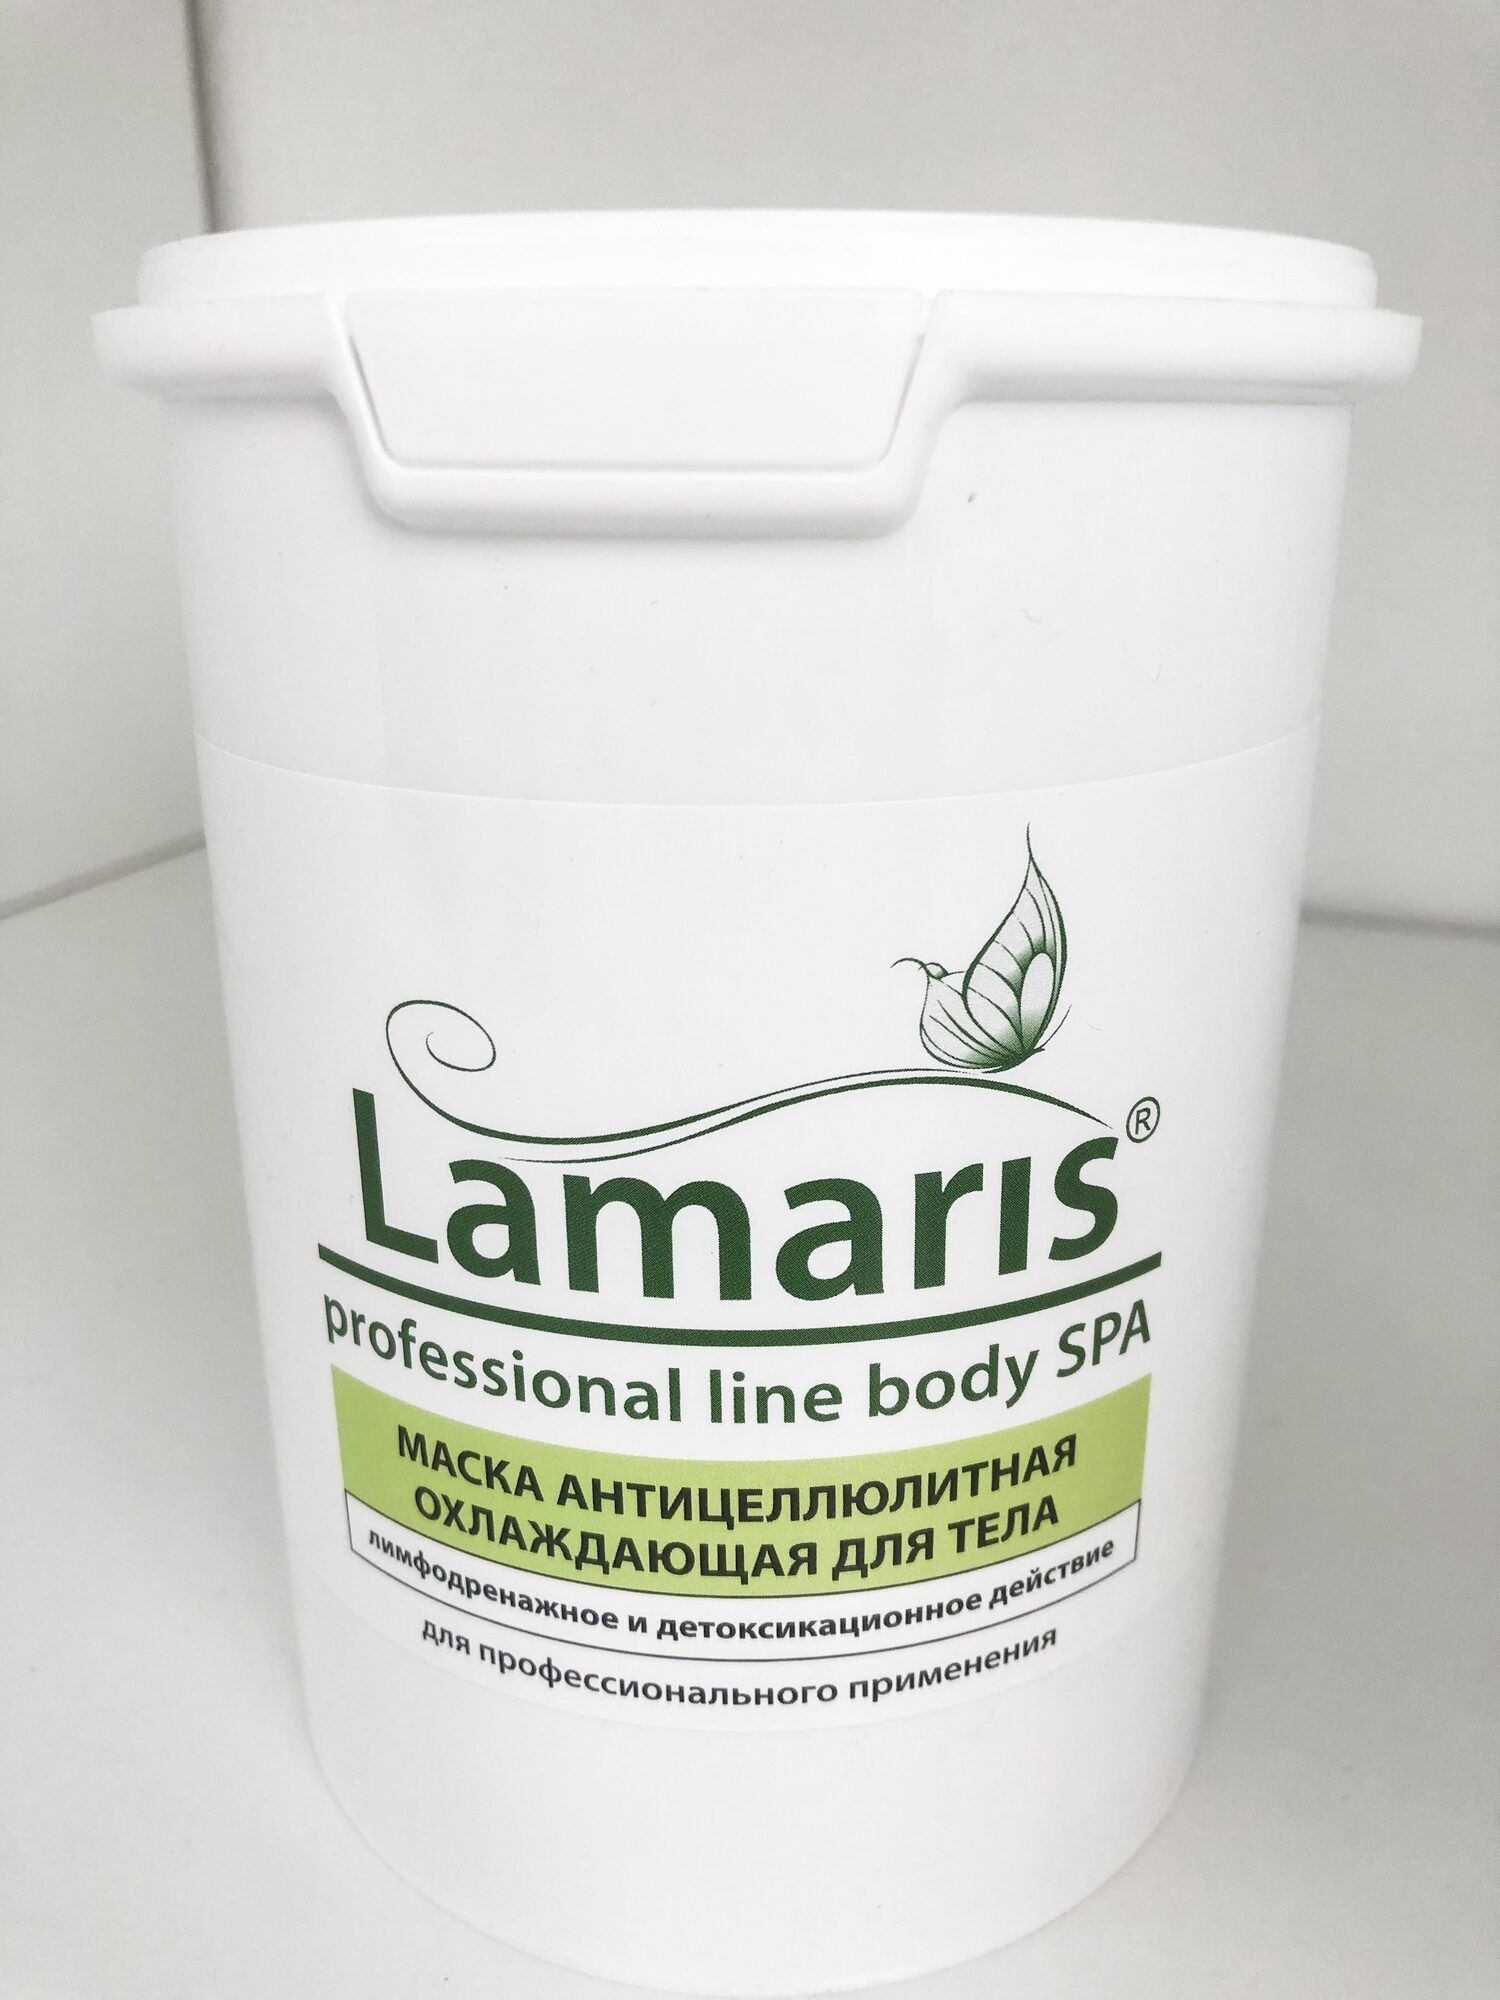 LAMARIS, Маска антицеллюлитная охлаждающая для тела, 1,5кг